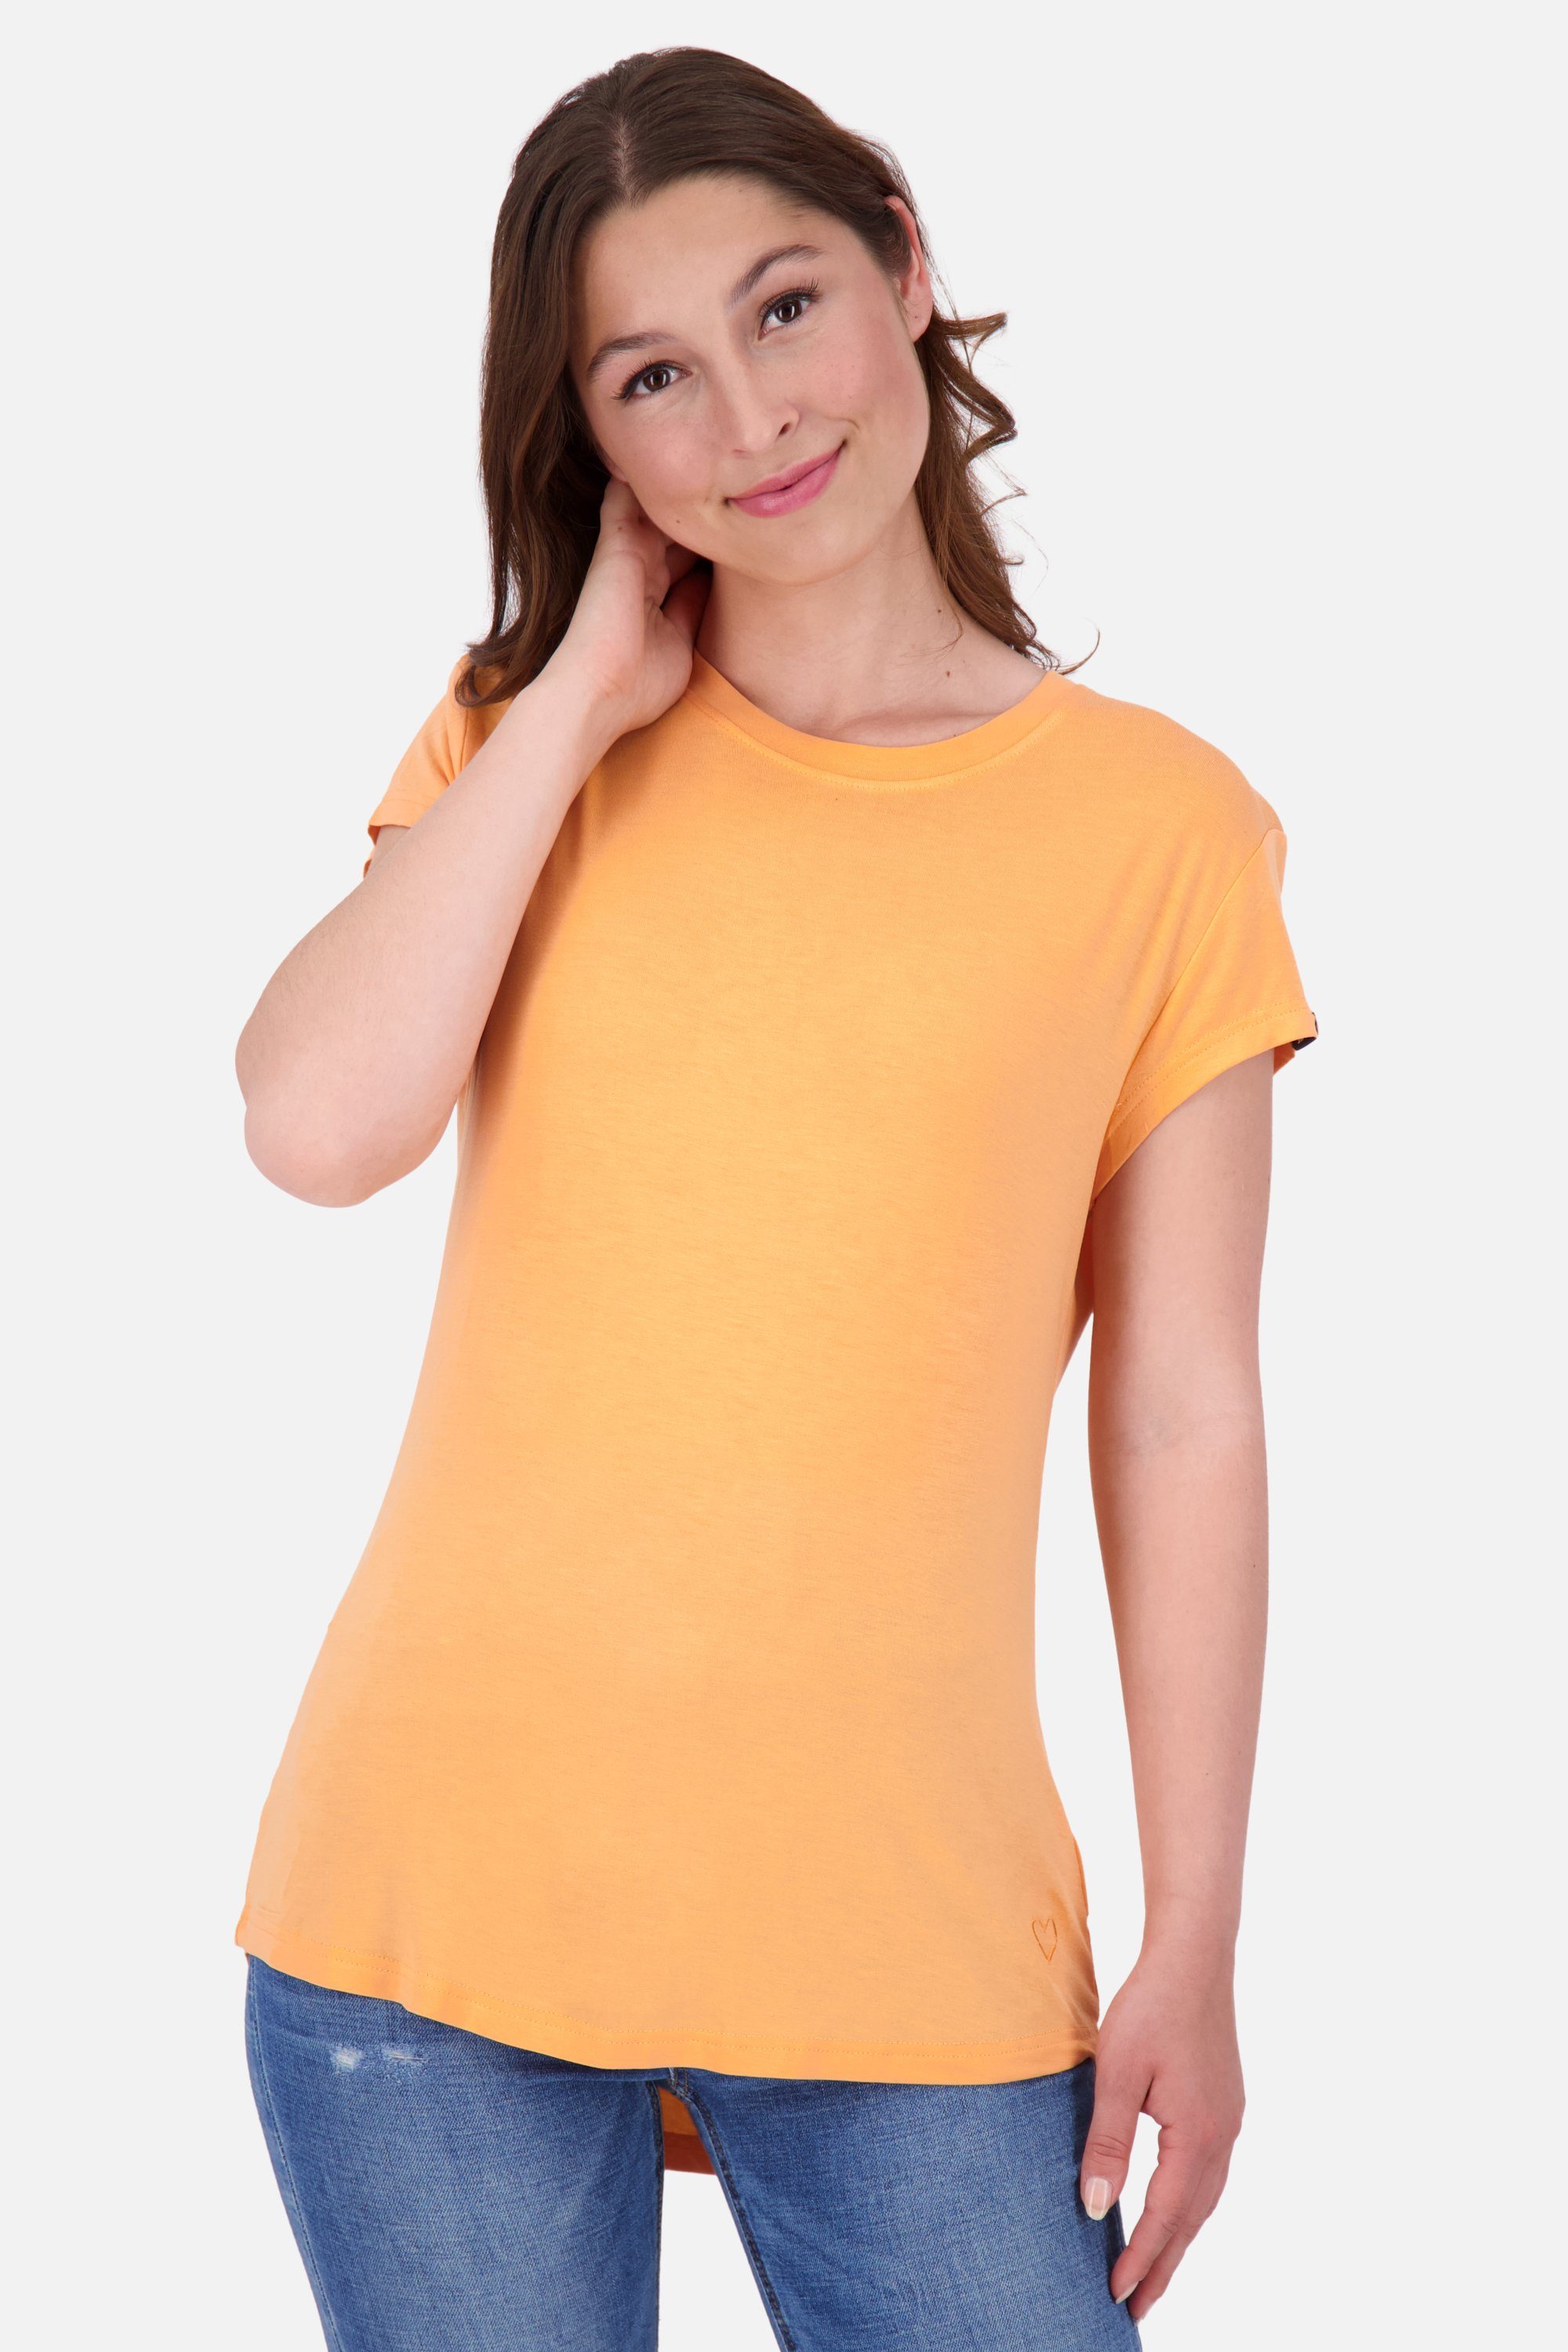 Damen Kickin MimmyAK & Rundhalsshirt Shirt Shirt Kurzarmshirt, tangerine A Alife